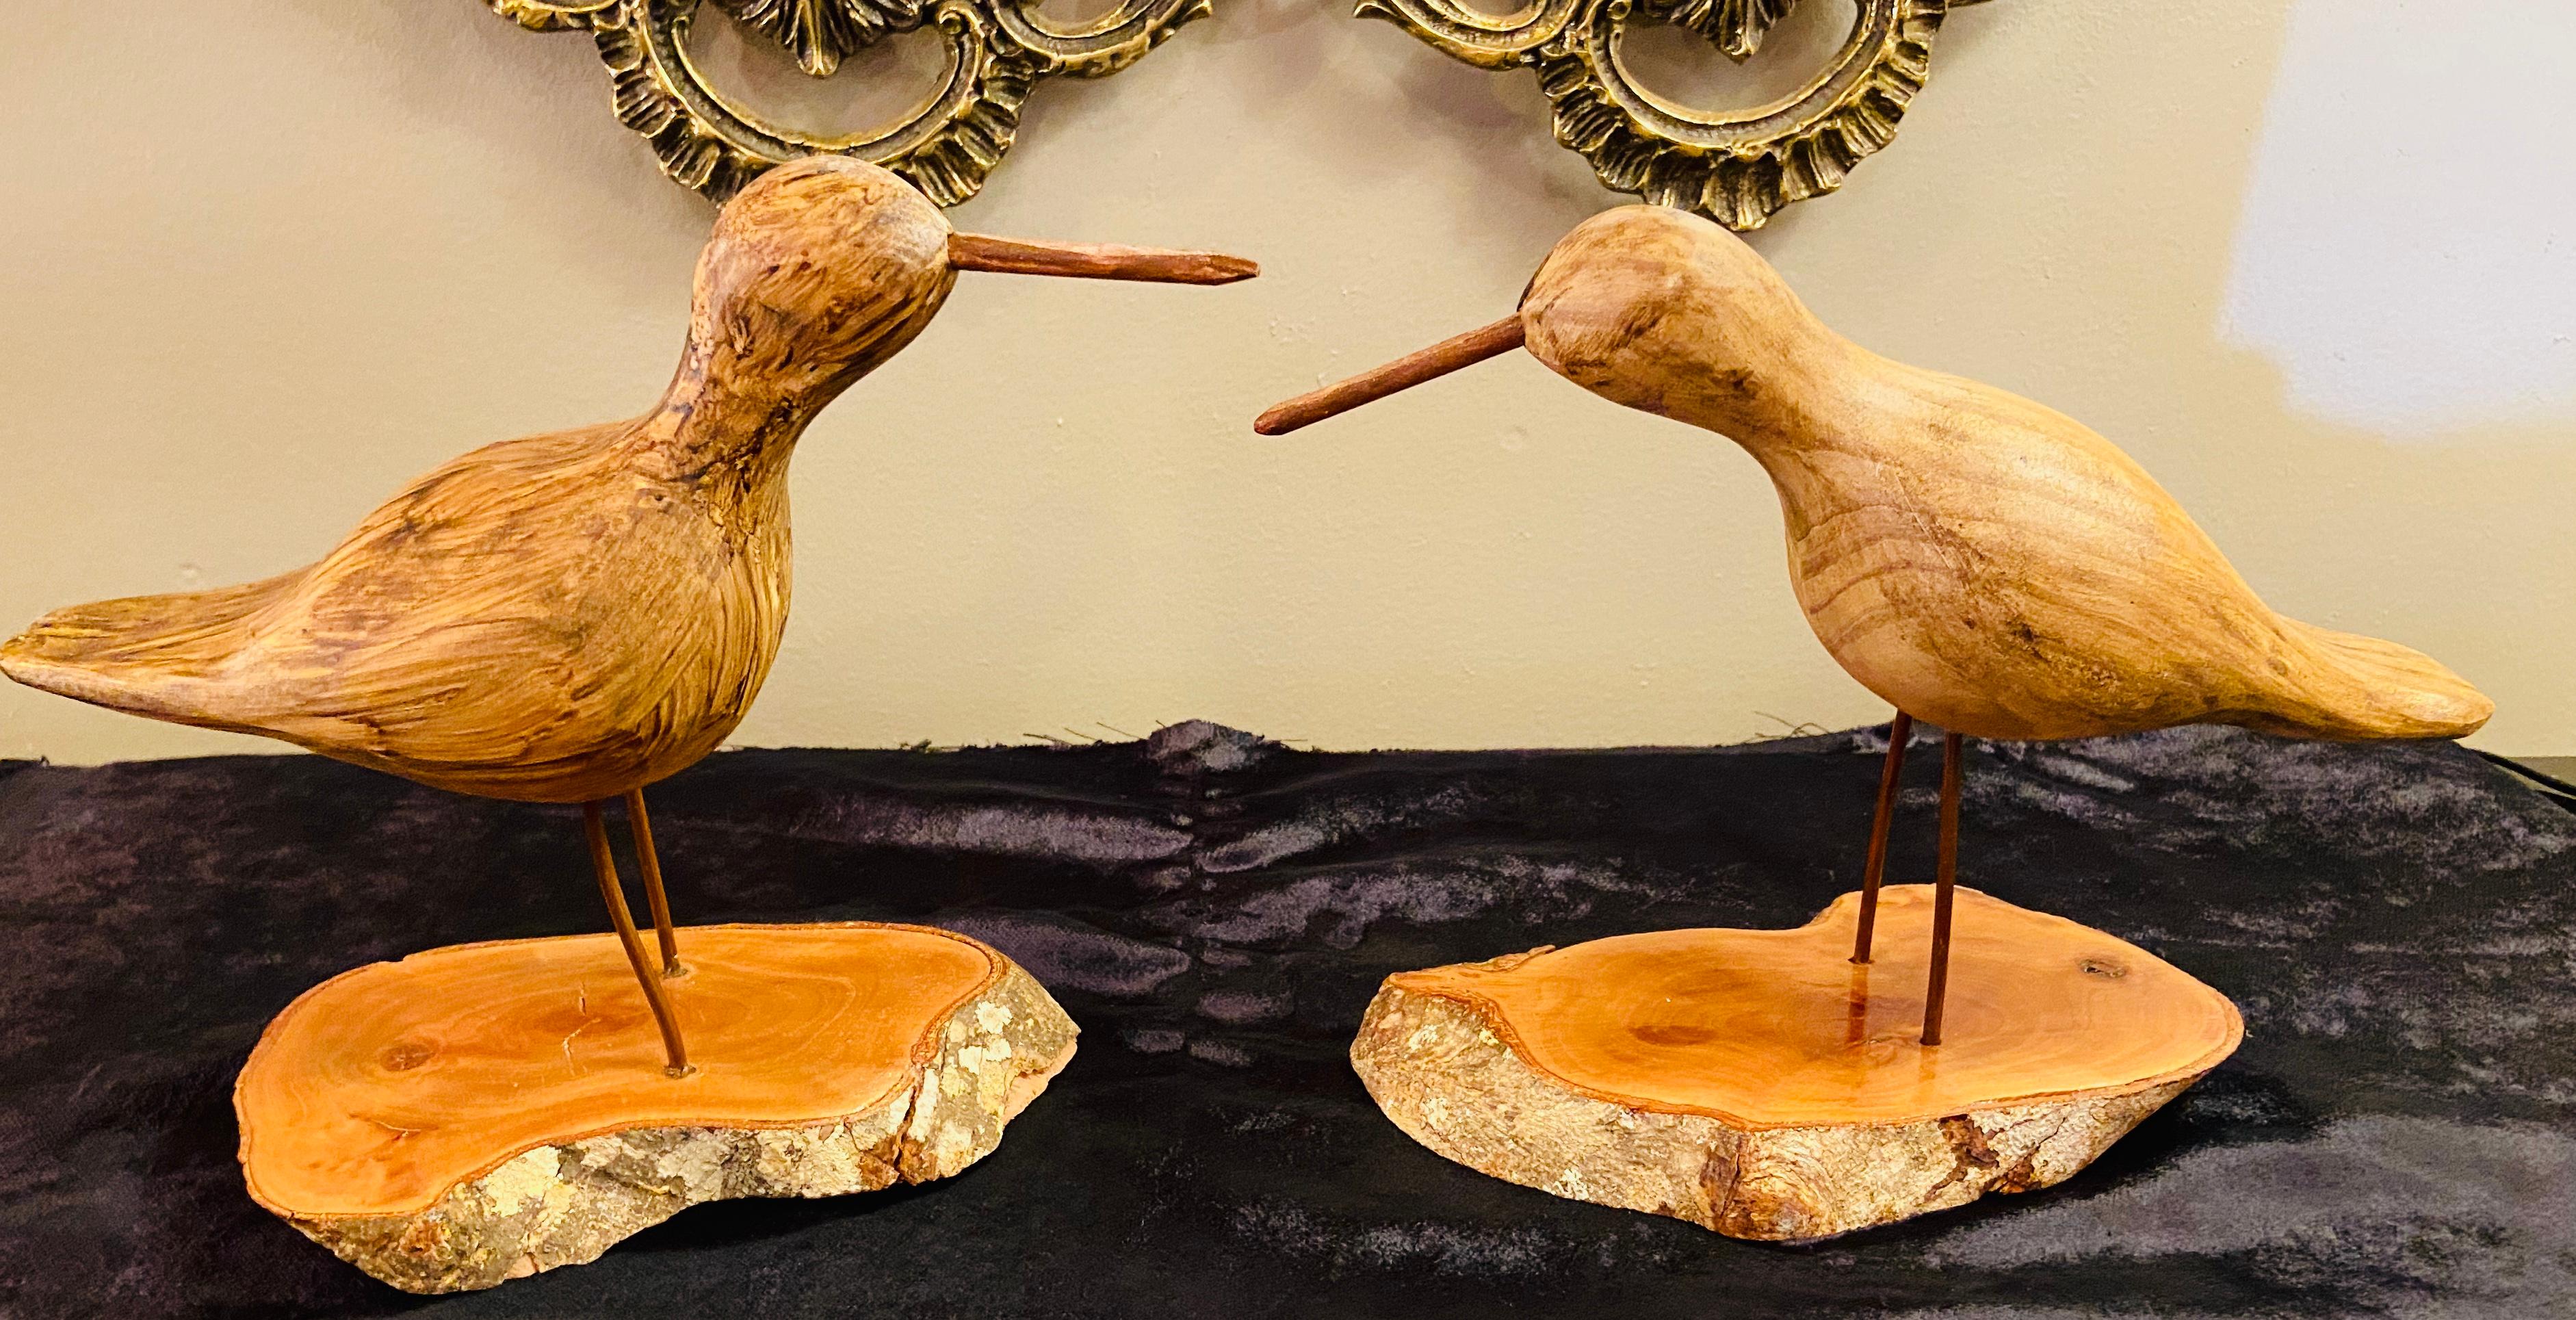 Ein Paar handgeschnitzte Vögel aus Walnussholz. Dieses reizende Vogelpaar aus Holz weist schöne Details auf und jeder Vogel steht fein auf einem Holzsockel. 
Ein fröhliches Dekorationsstück, das Ihren Schreibtisch oder jeden anderen Ort in Ihrem